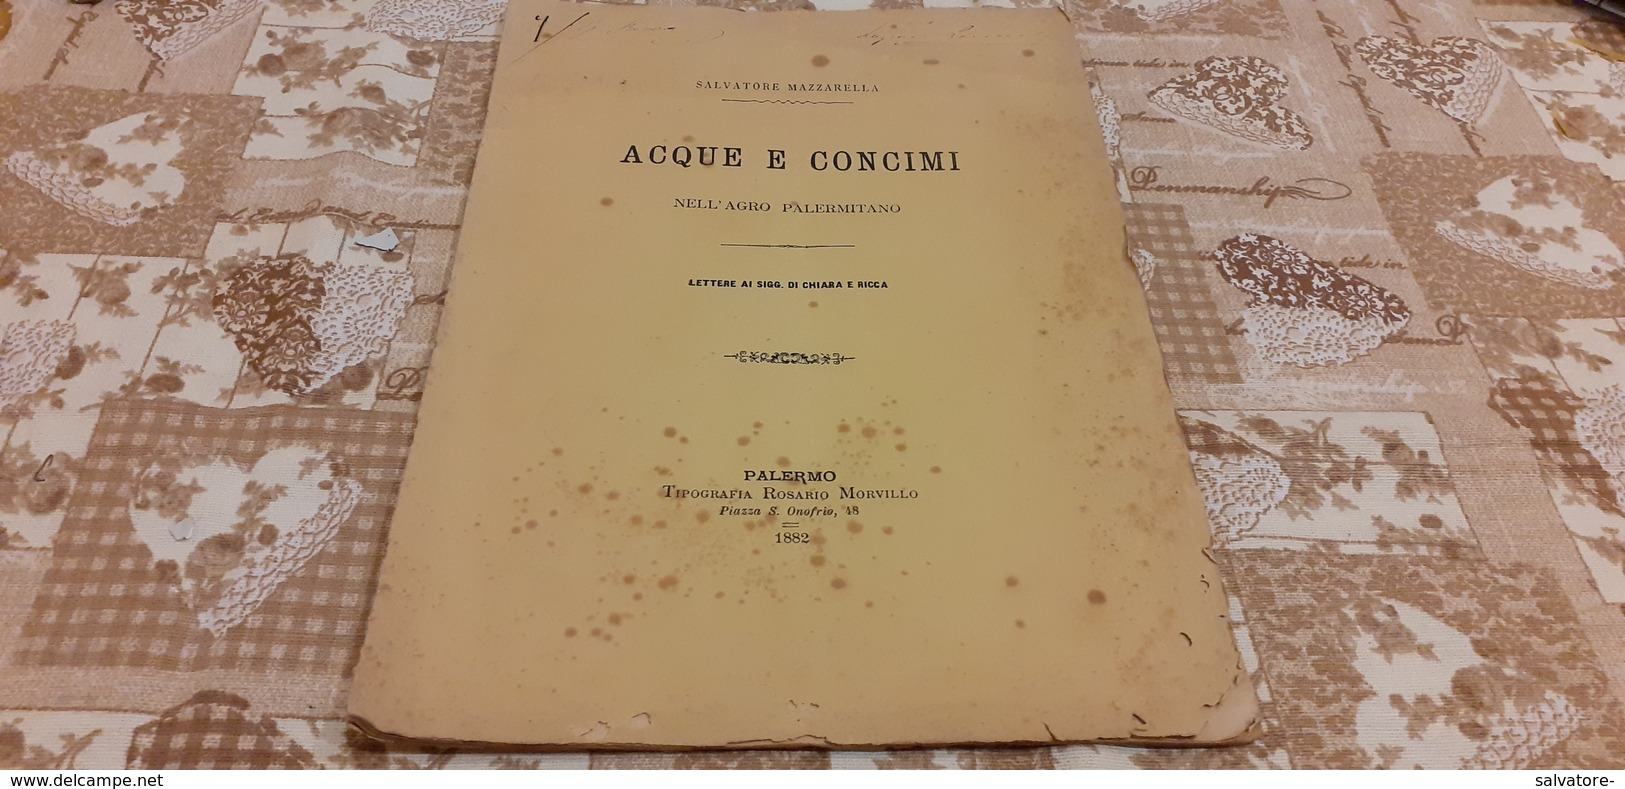 ACQUE E CONCIMI NELL'AGRO PALERMITANO-SALVATORE MAZZARELLA- 1882-PAGINE 18 - Libri Antichi